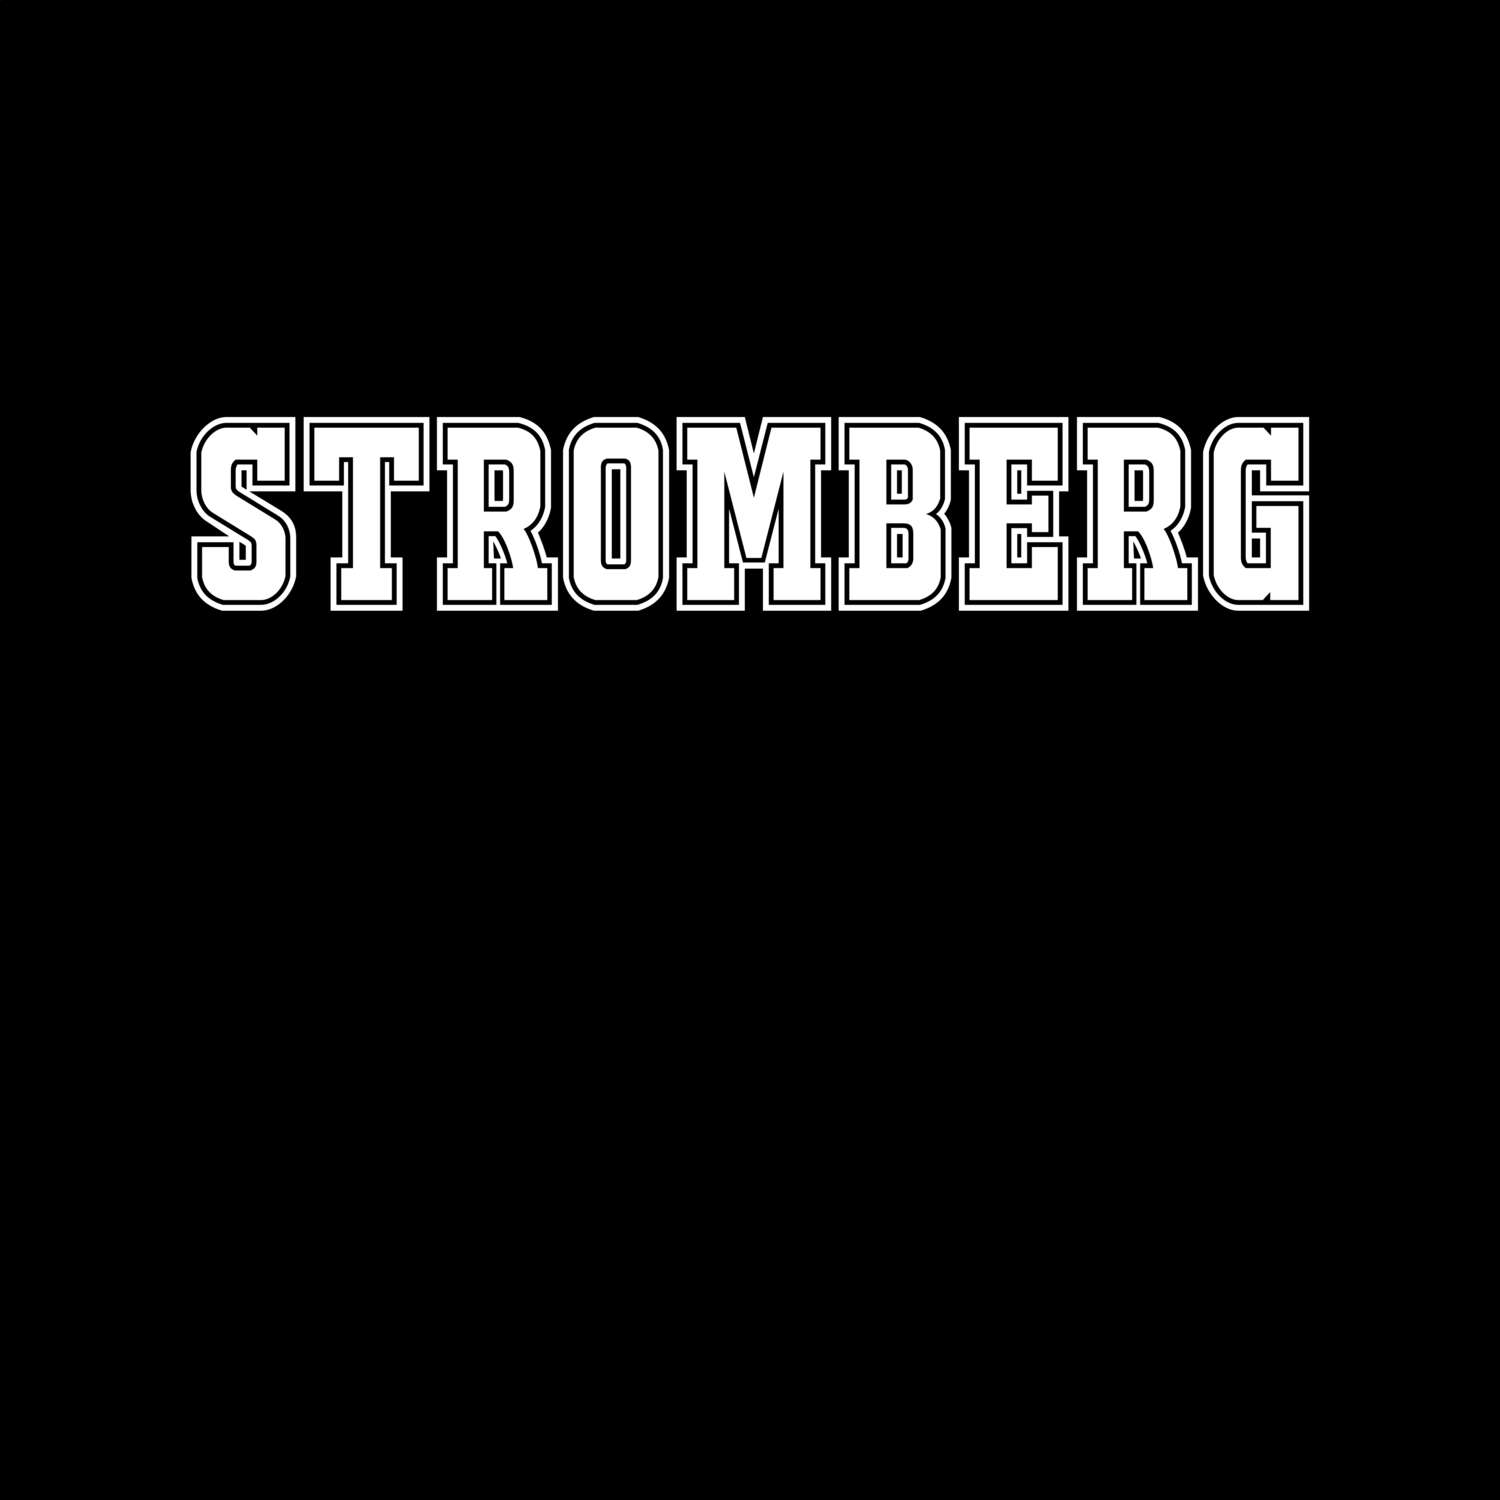 Stromberg T-Shirt »Classic«